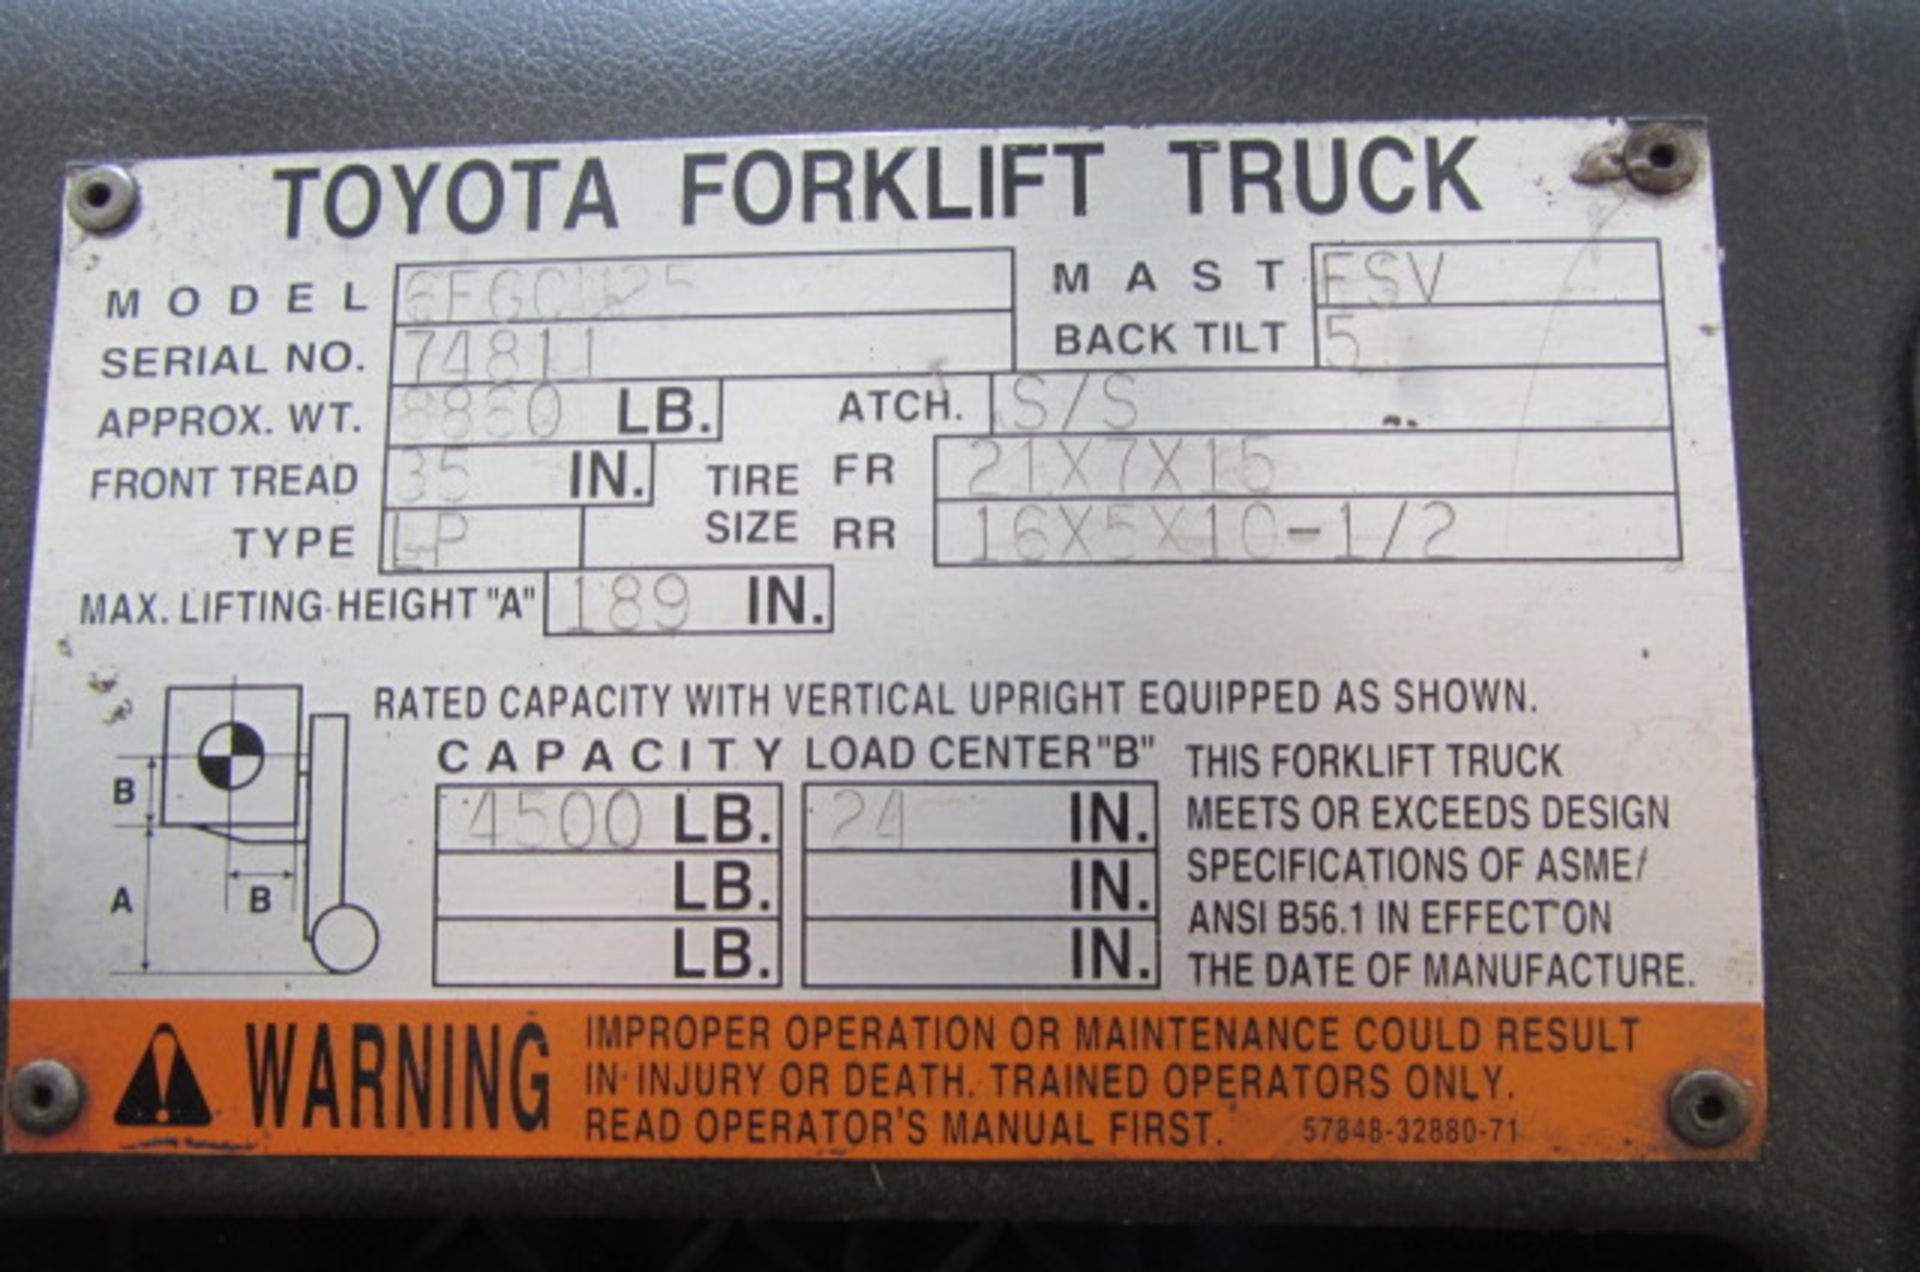 Toyota Model 6FGCU25 4500lb Propane Forklift with Side Shift, 3 Stage Mast, Lights, 4 Hard Tires, - Image 4 of 5